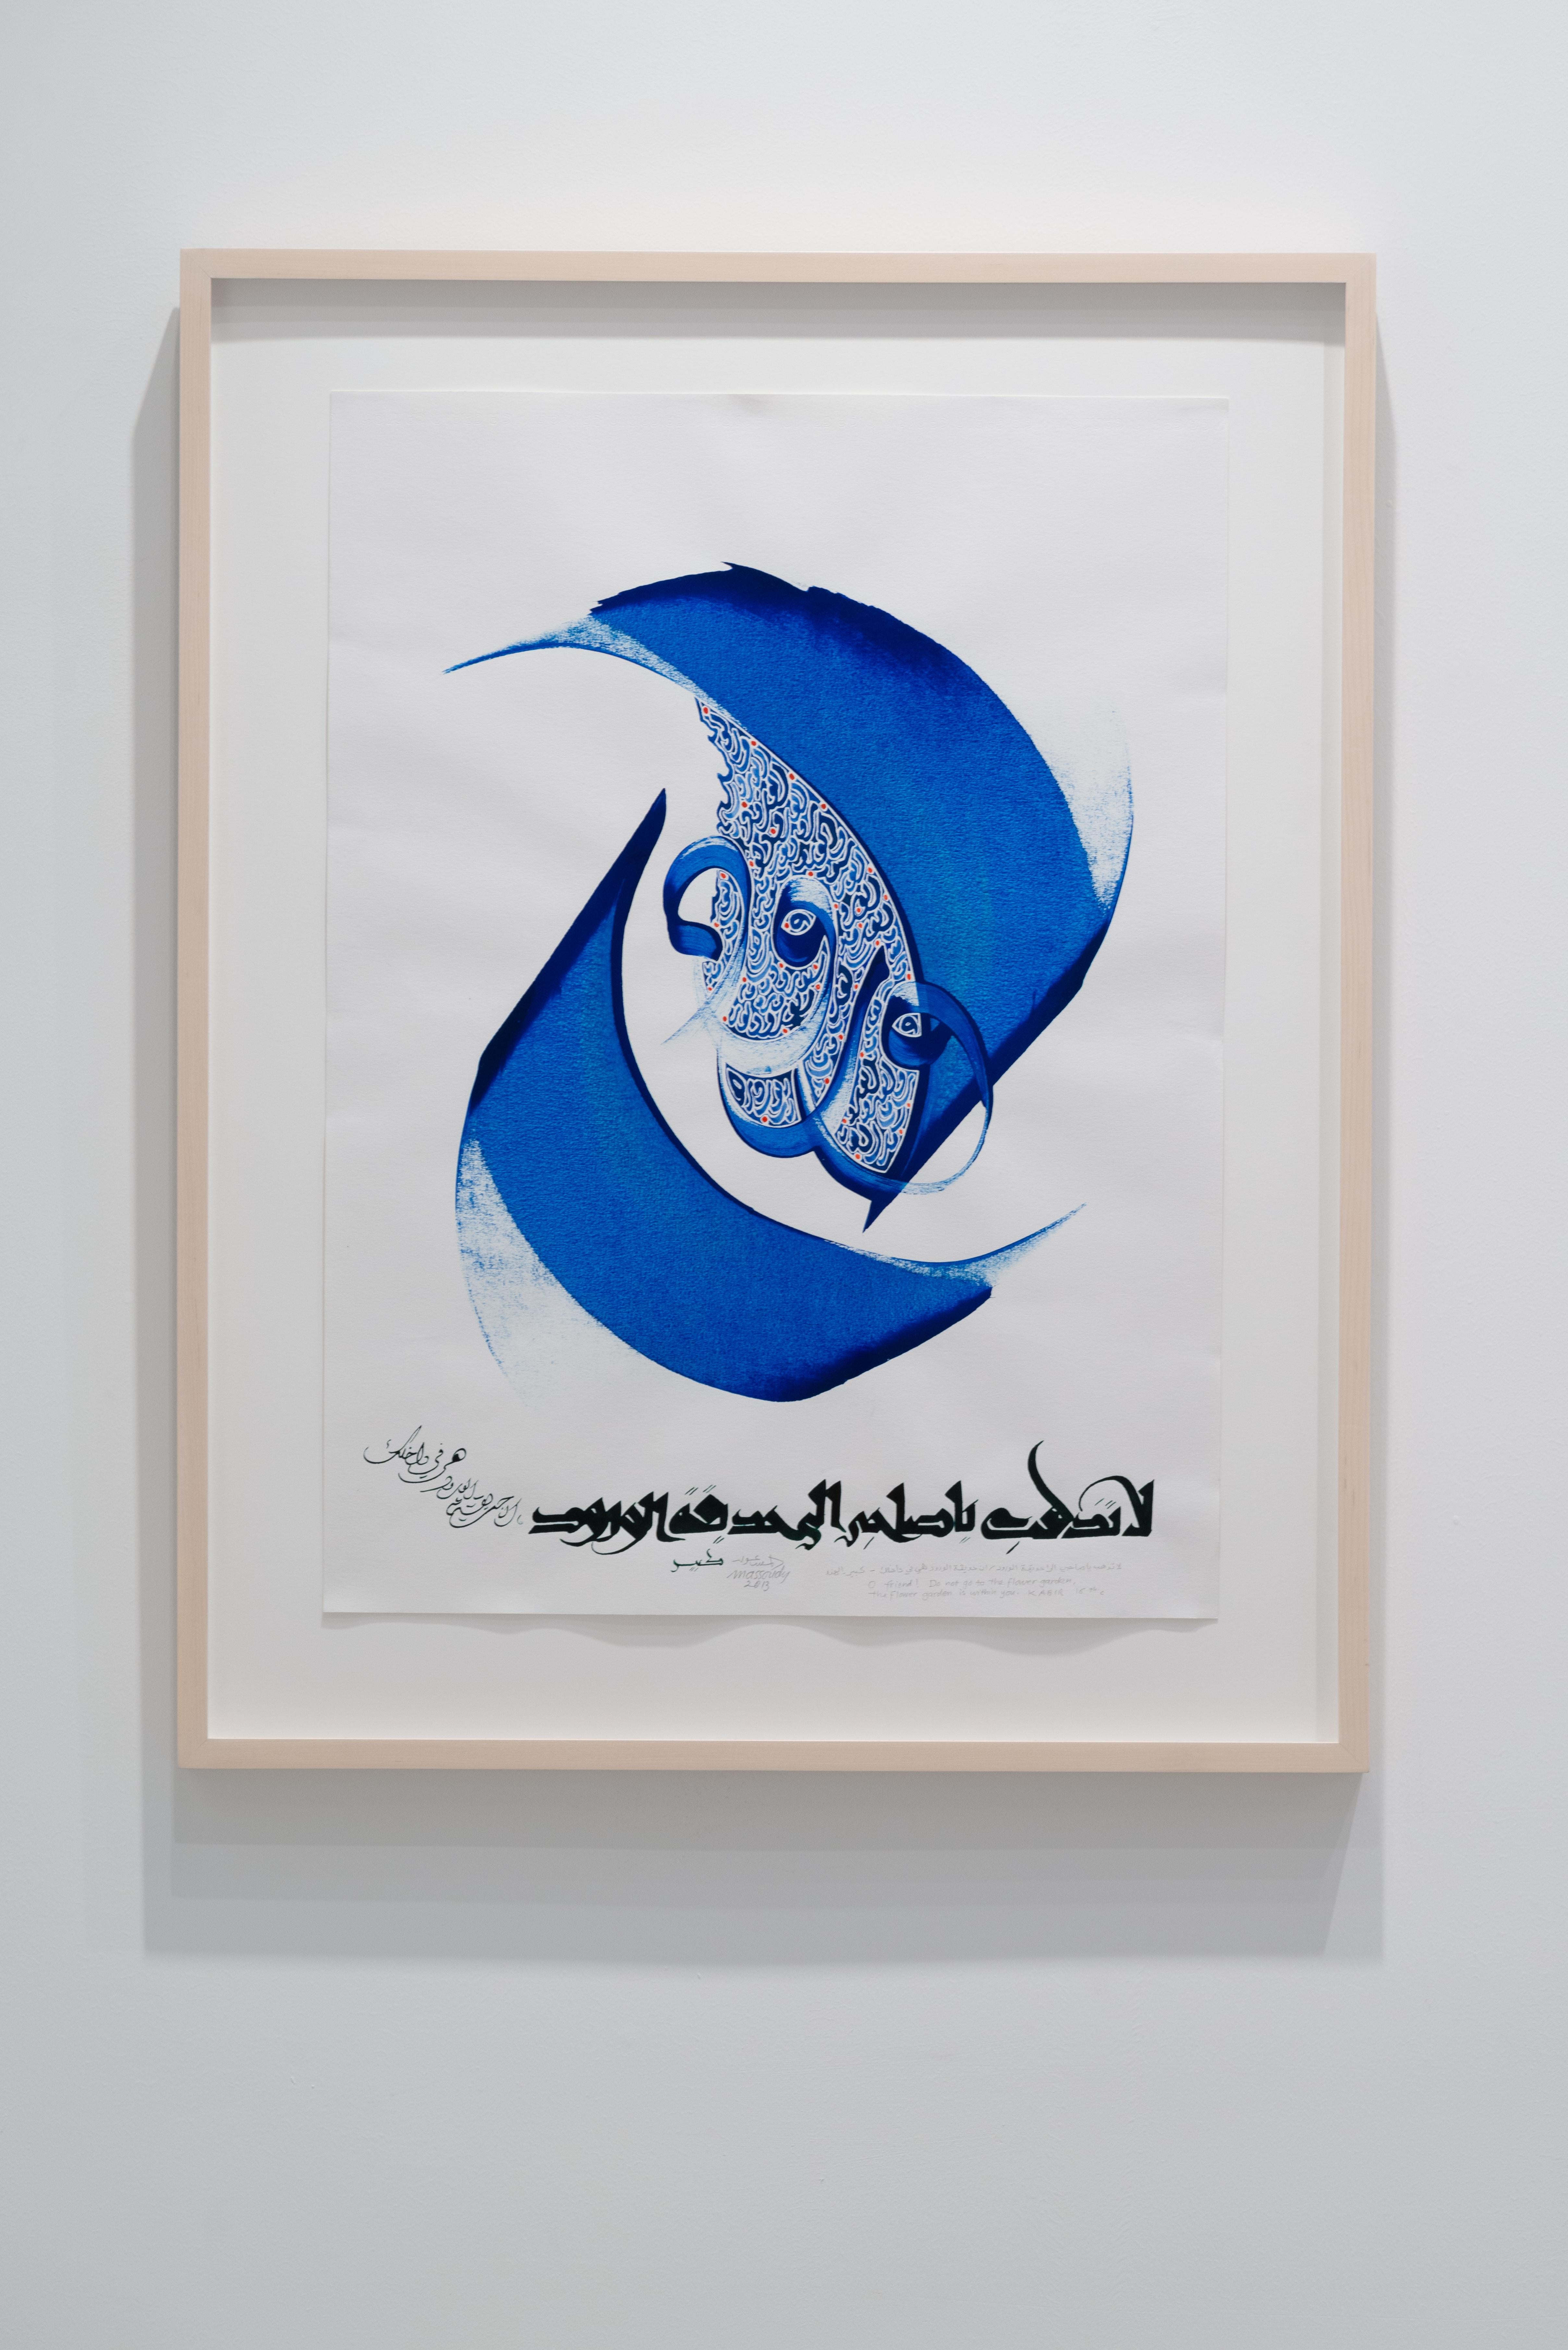 Hassan Massoudy Abstract Drawing – Leuchtend blaue zeitgenössische islamische Kalligrafie auf Papier